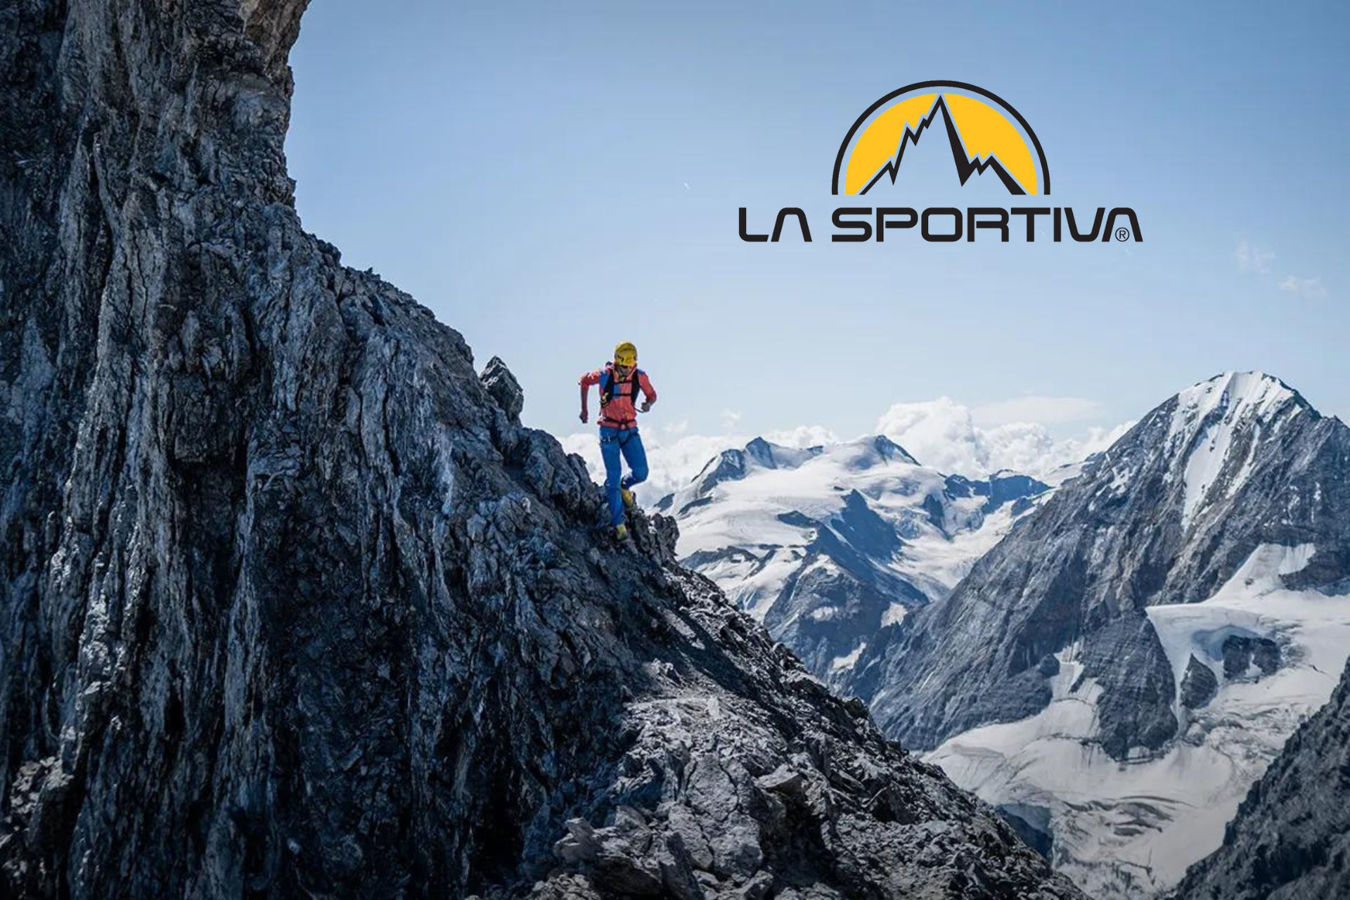 La Sportiva: En pioner innen fjellskoteknologi